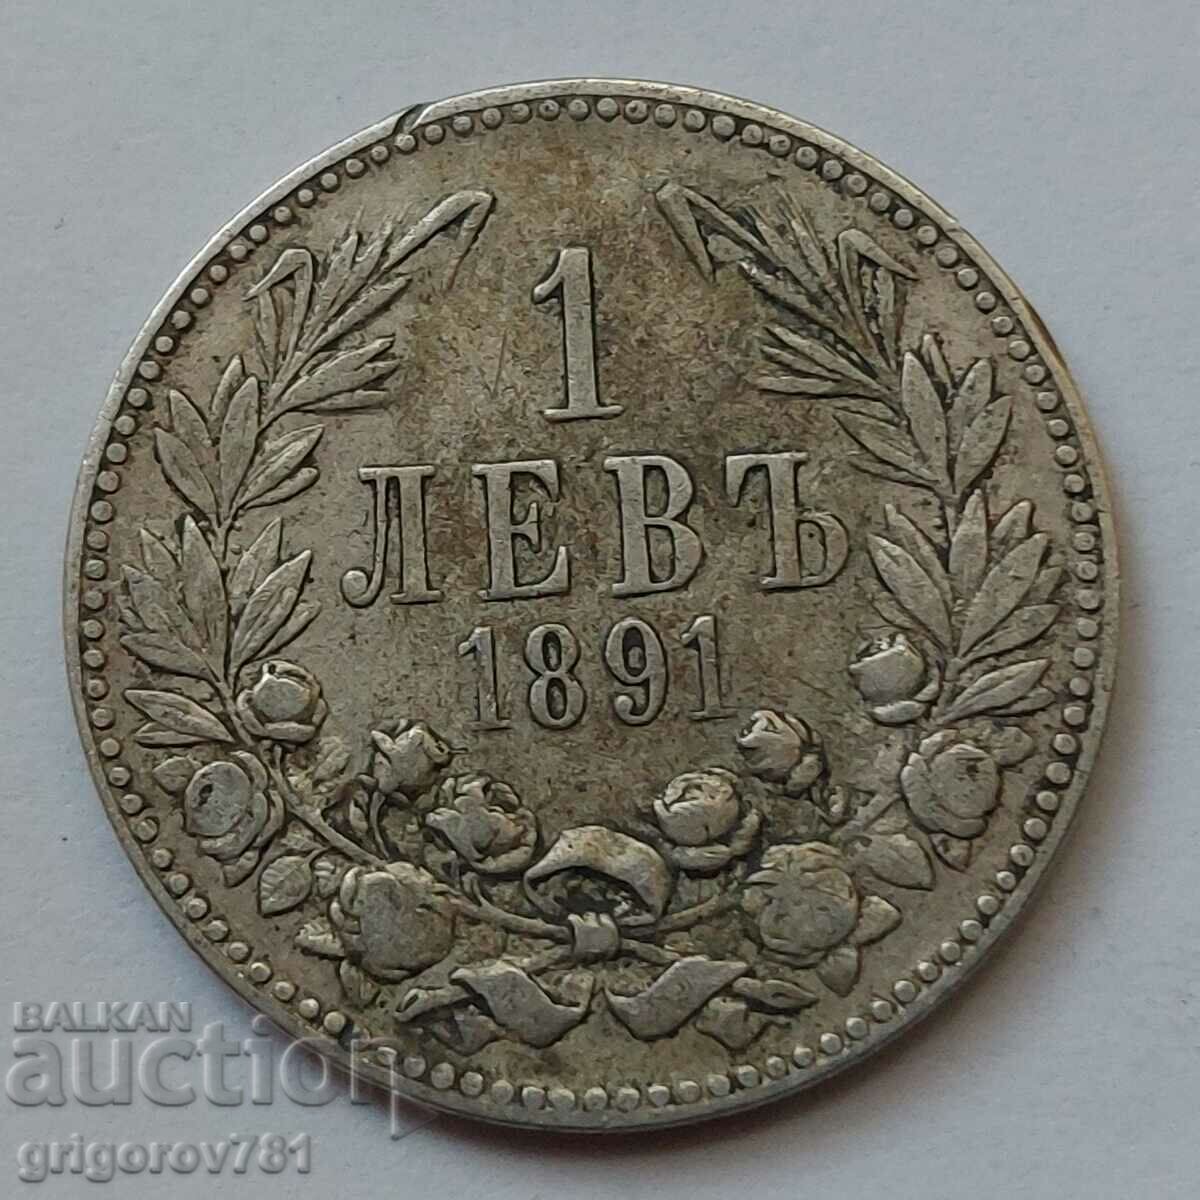 Ασήμι 1 λεβ 1891 - ασημένιο νόμισμα #2